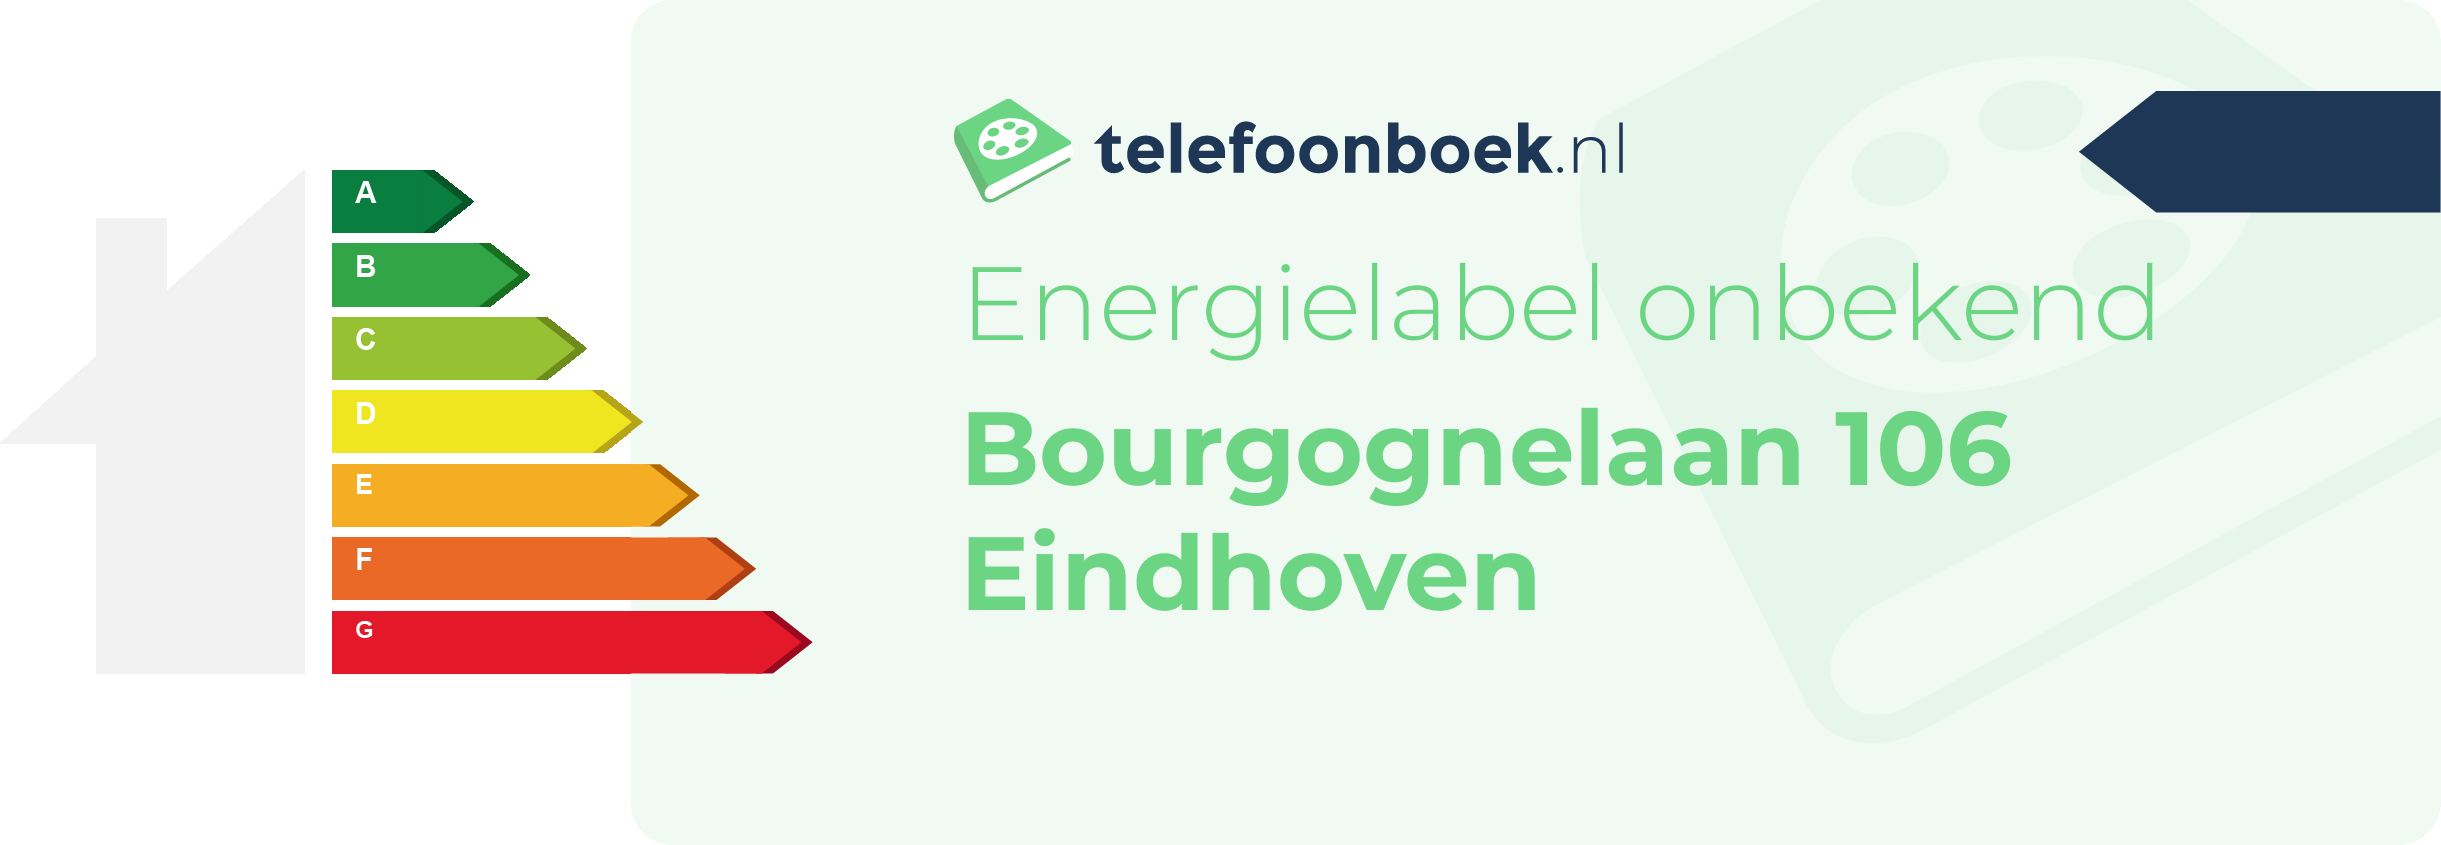 Energielabel Bourgognelaan 106 Eindhoven